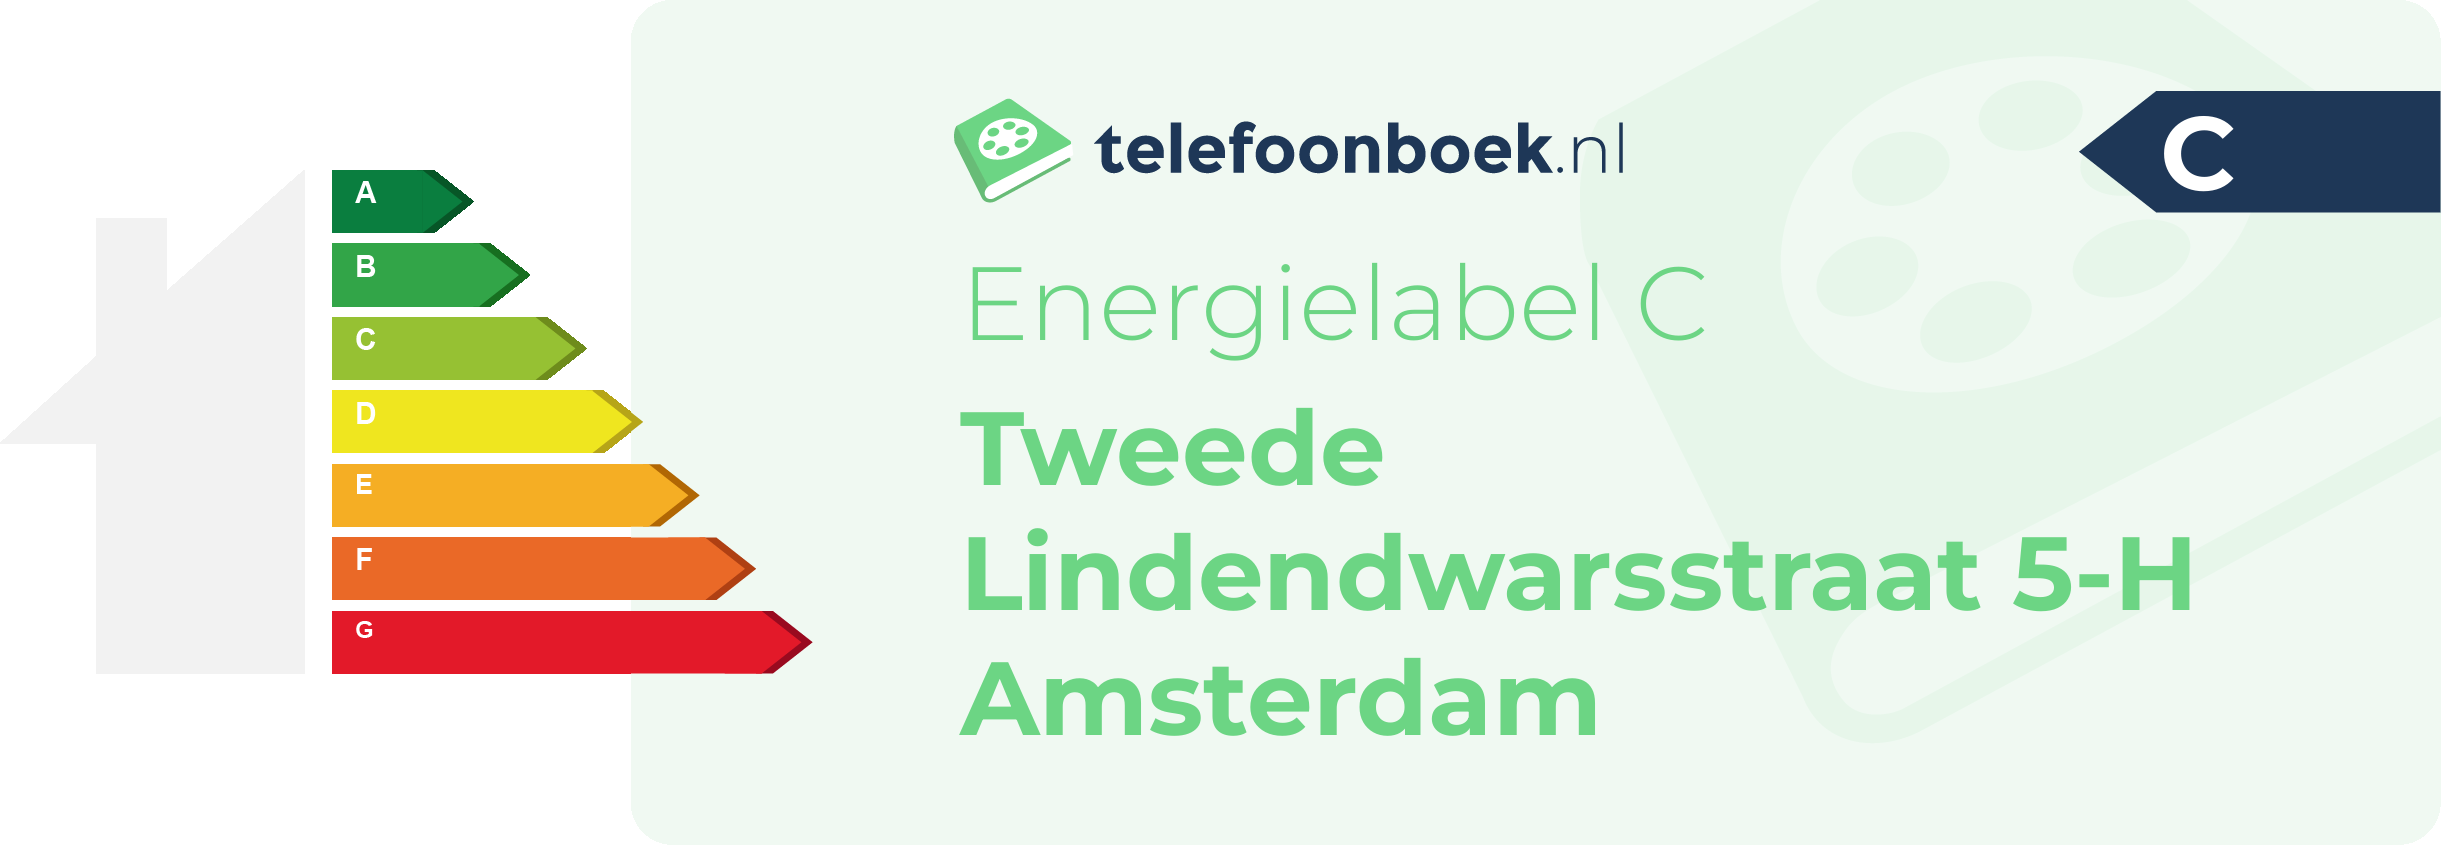 Energielabel Tweede Lindendwarsstraat 5-H Amsterdam